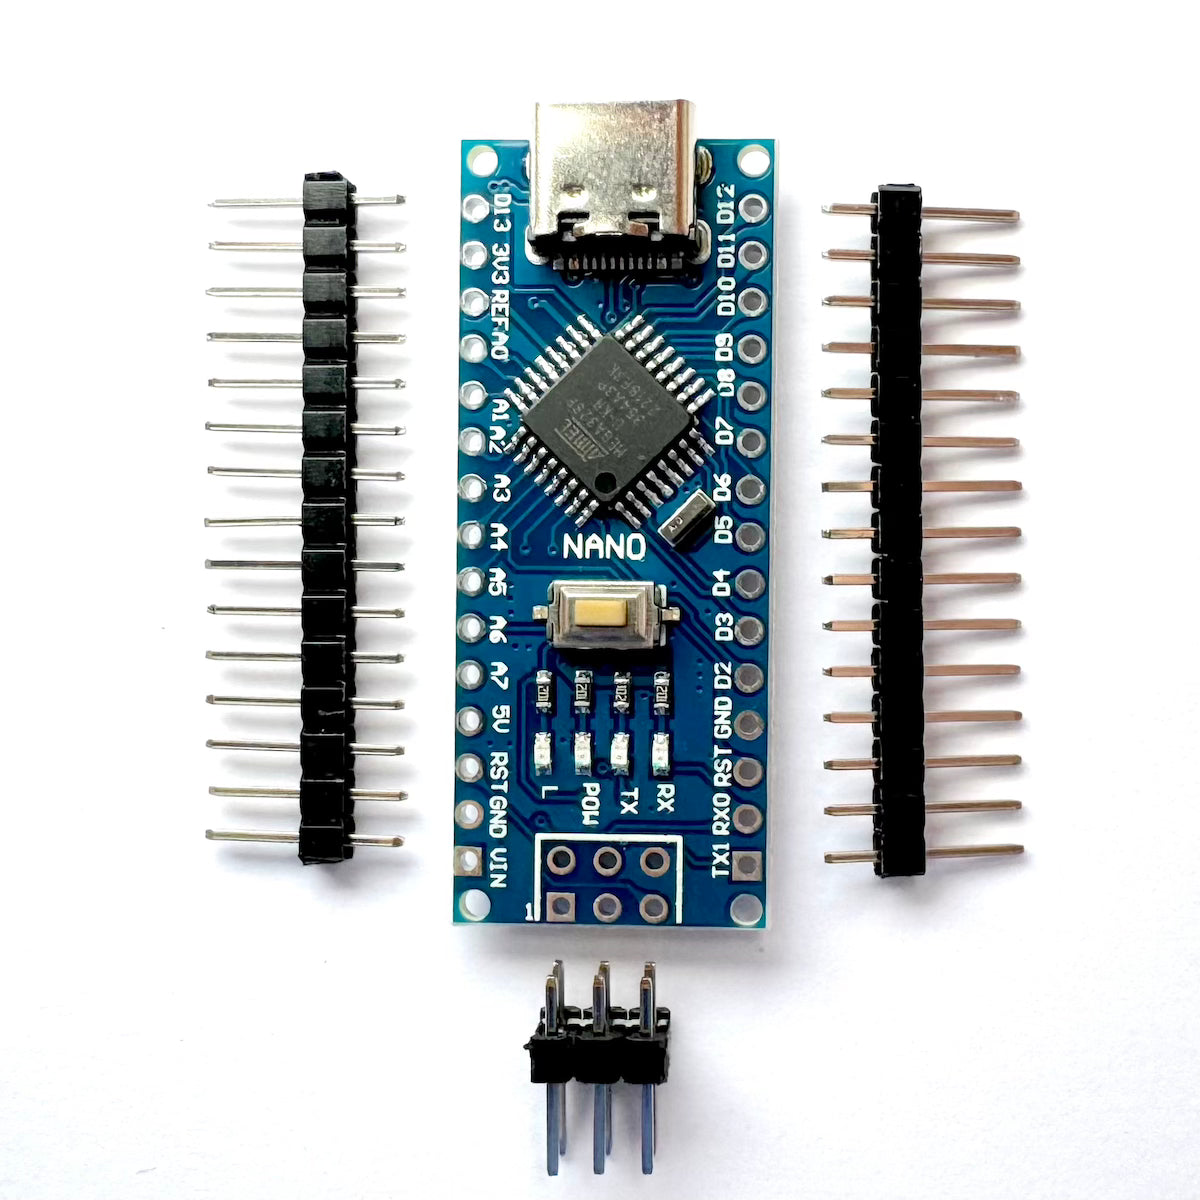 Nano V3 Modul mit USB-C, ATmega328P, 5V, 16MHz, Arduino kompatibel